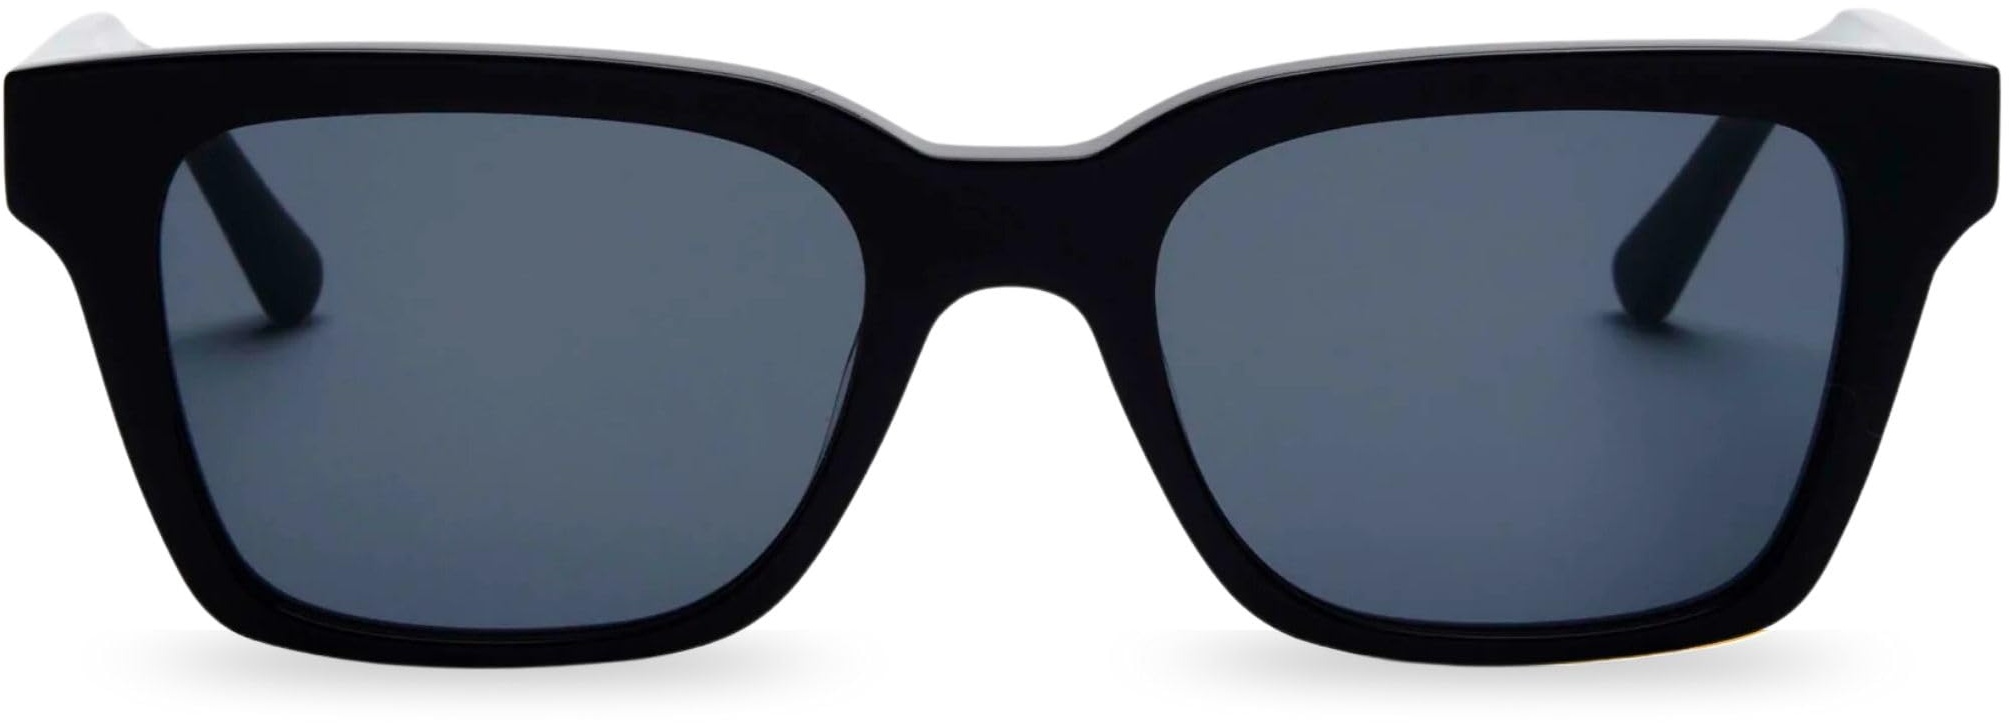 MessyWeekend Sonnenbrille Herren Rechteckig mit handgefertigtem Acetat Rahmen - Gläser mit vollem UV400 Schutz - Designer, Coole, Vintage Sonnenbrille für Männer - Sunglasses Aesthetic Men - DEAN - Einheitsgröße